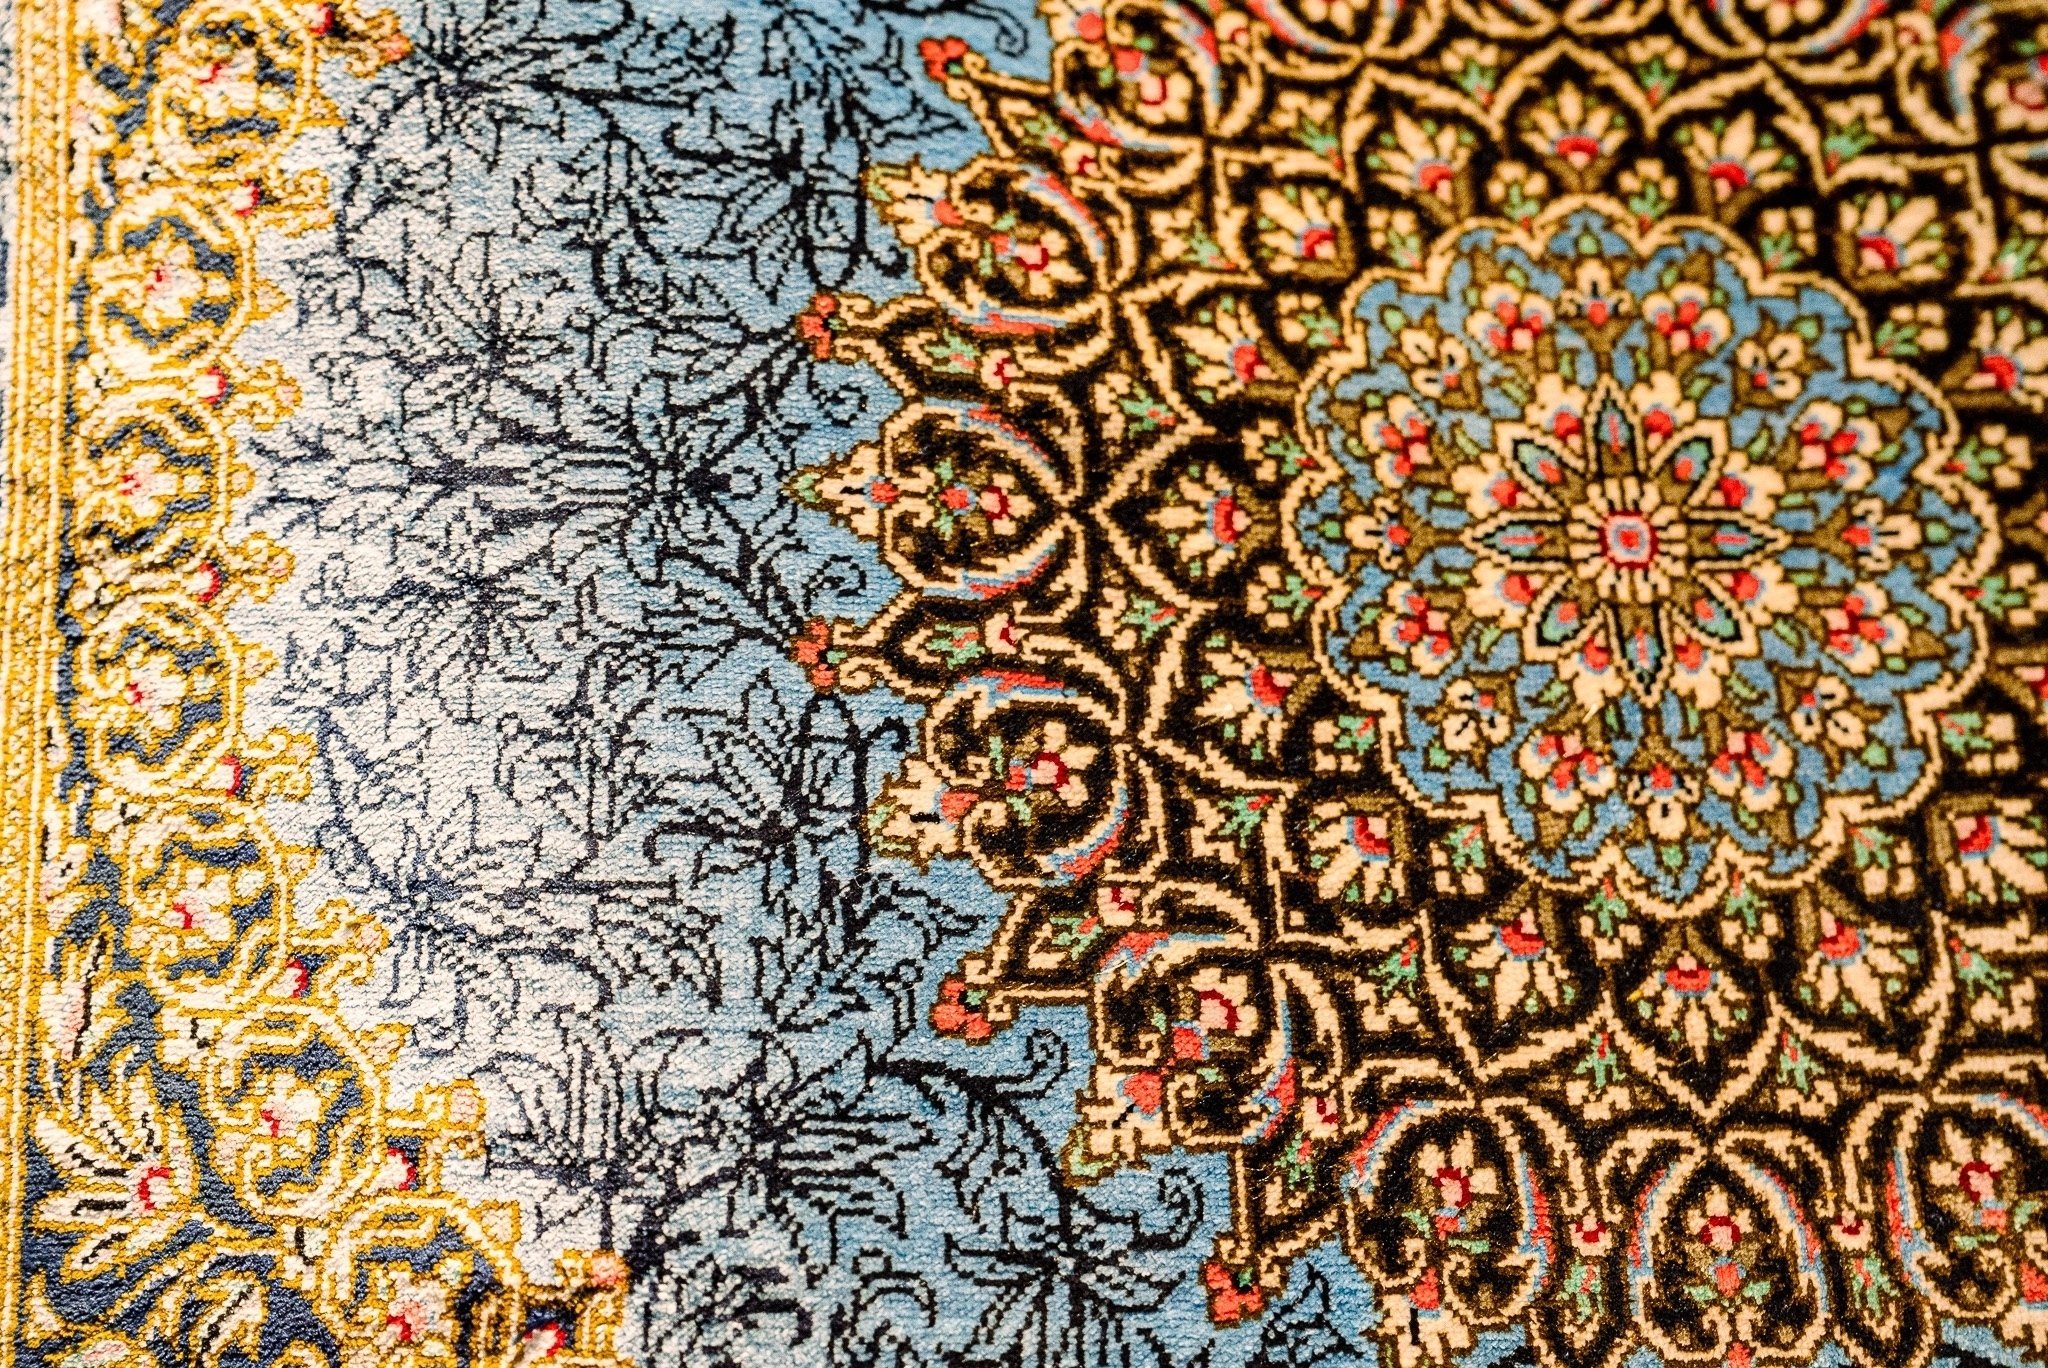 はじまりの絨毯−手織り絨毯の起源・ペルシャ絨毯−｜三方舎書斎gallery